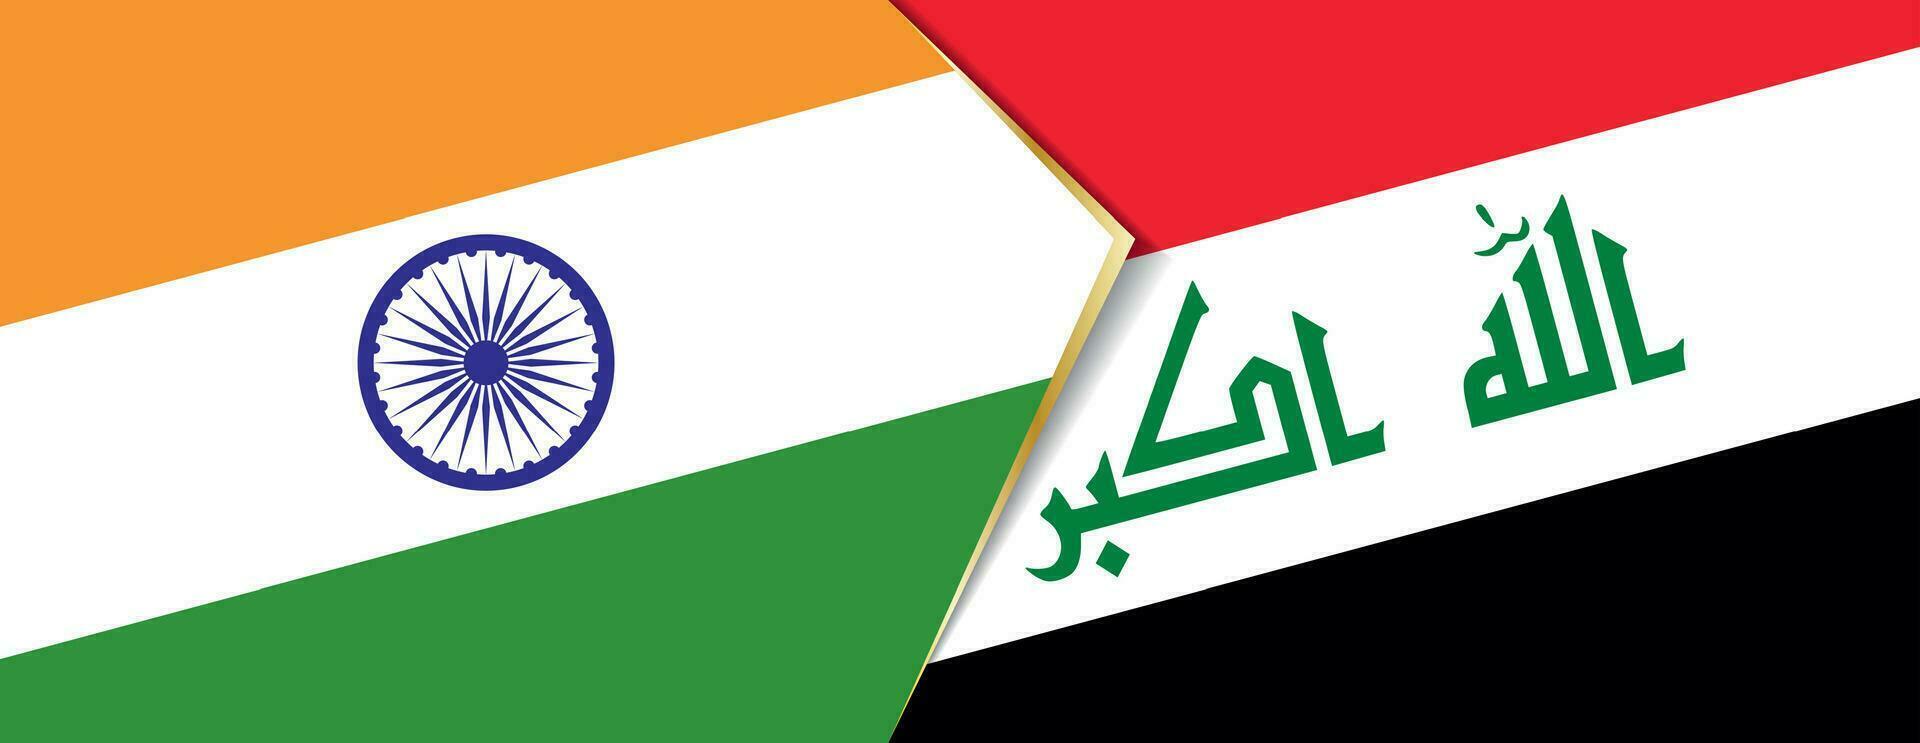 Indien och irak flaggor, två vektor flaggor.